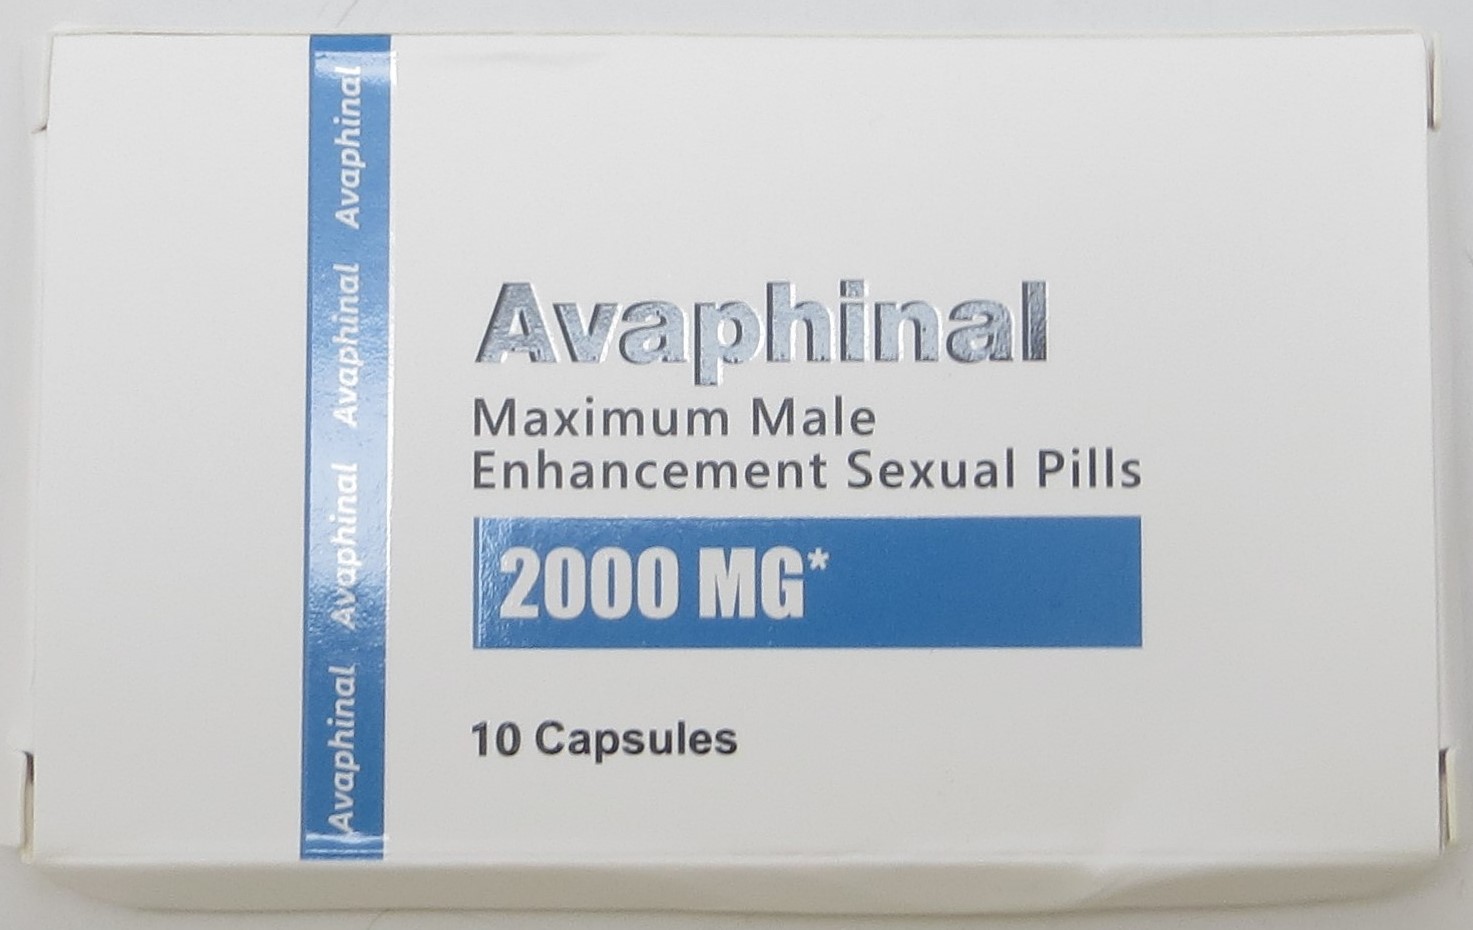 Billede af det ulovlige produkt: Avaphinal Maximum Male Enhancement